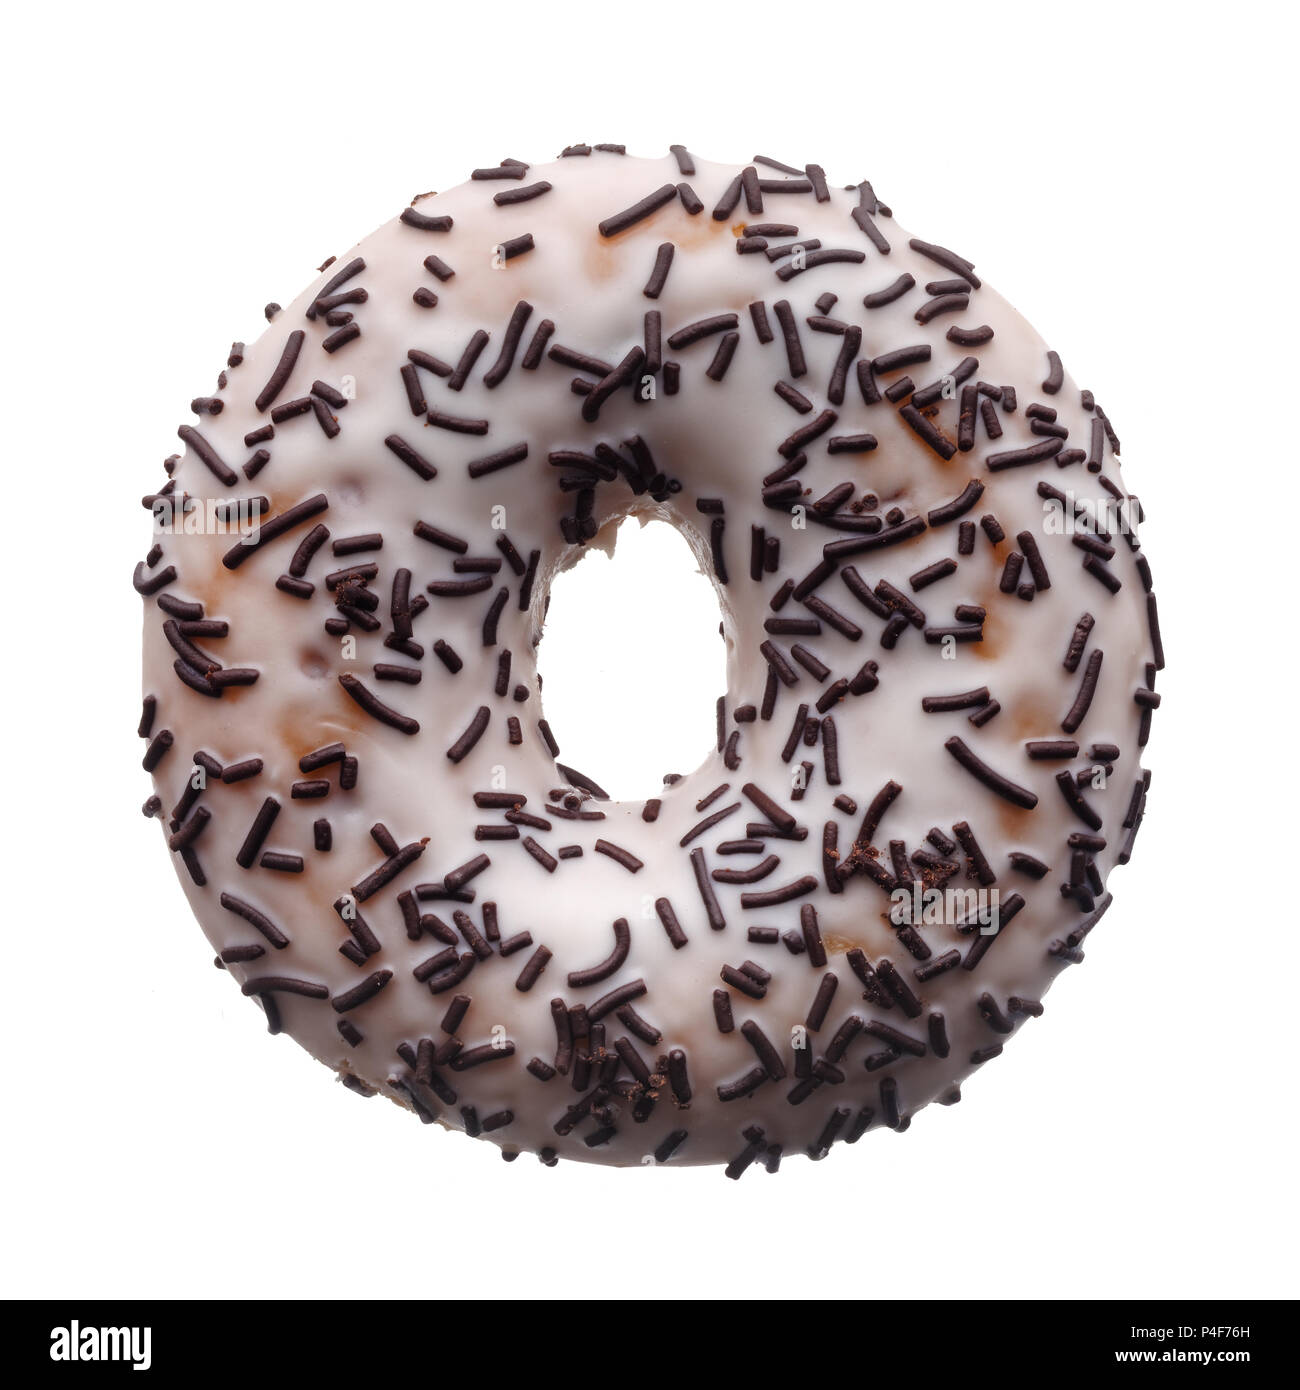 L'alimentation : glaçure blanche et de vermicelles de chocolat donut, isolé sur fond blanc Banque D'Images